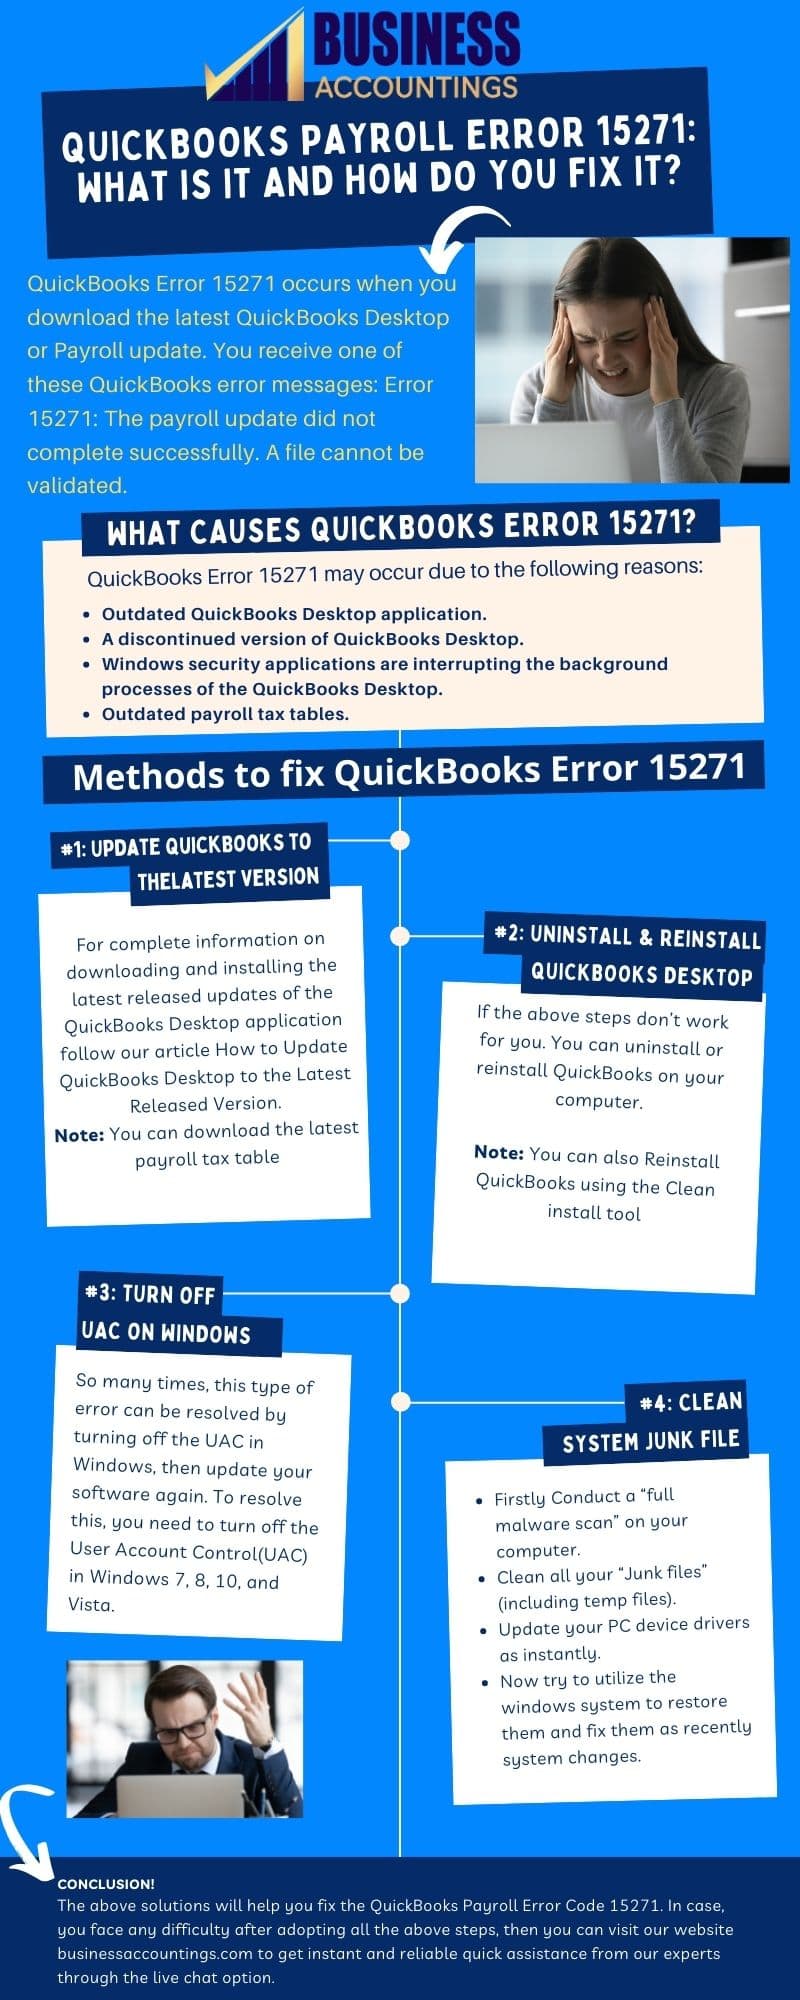 How to Fix The Quickbooks Error 15271